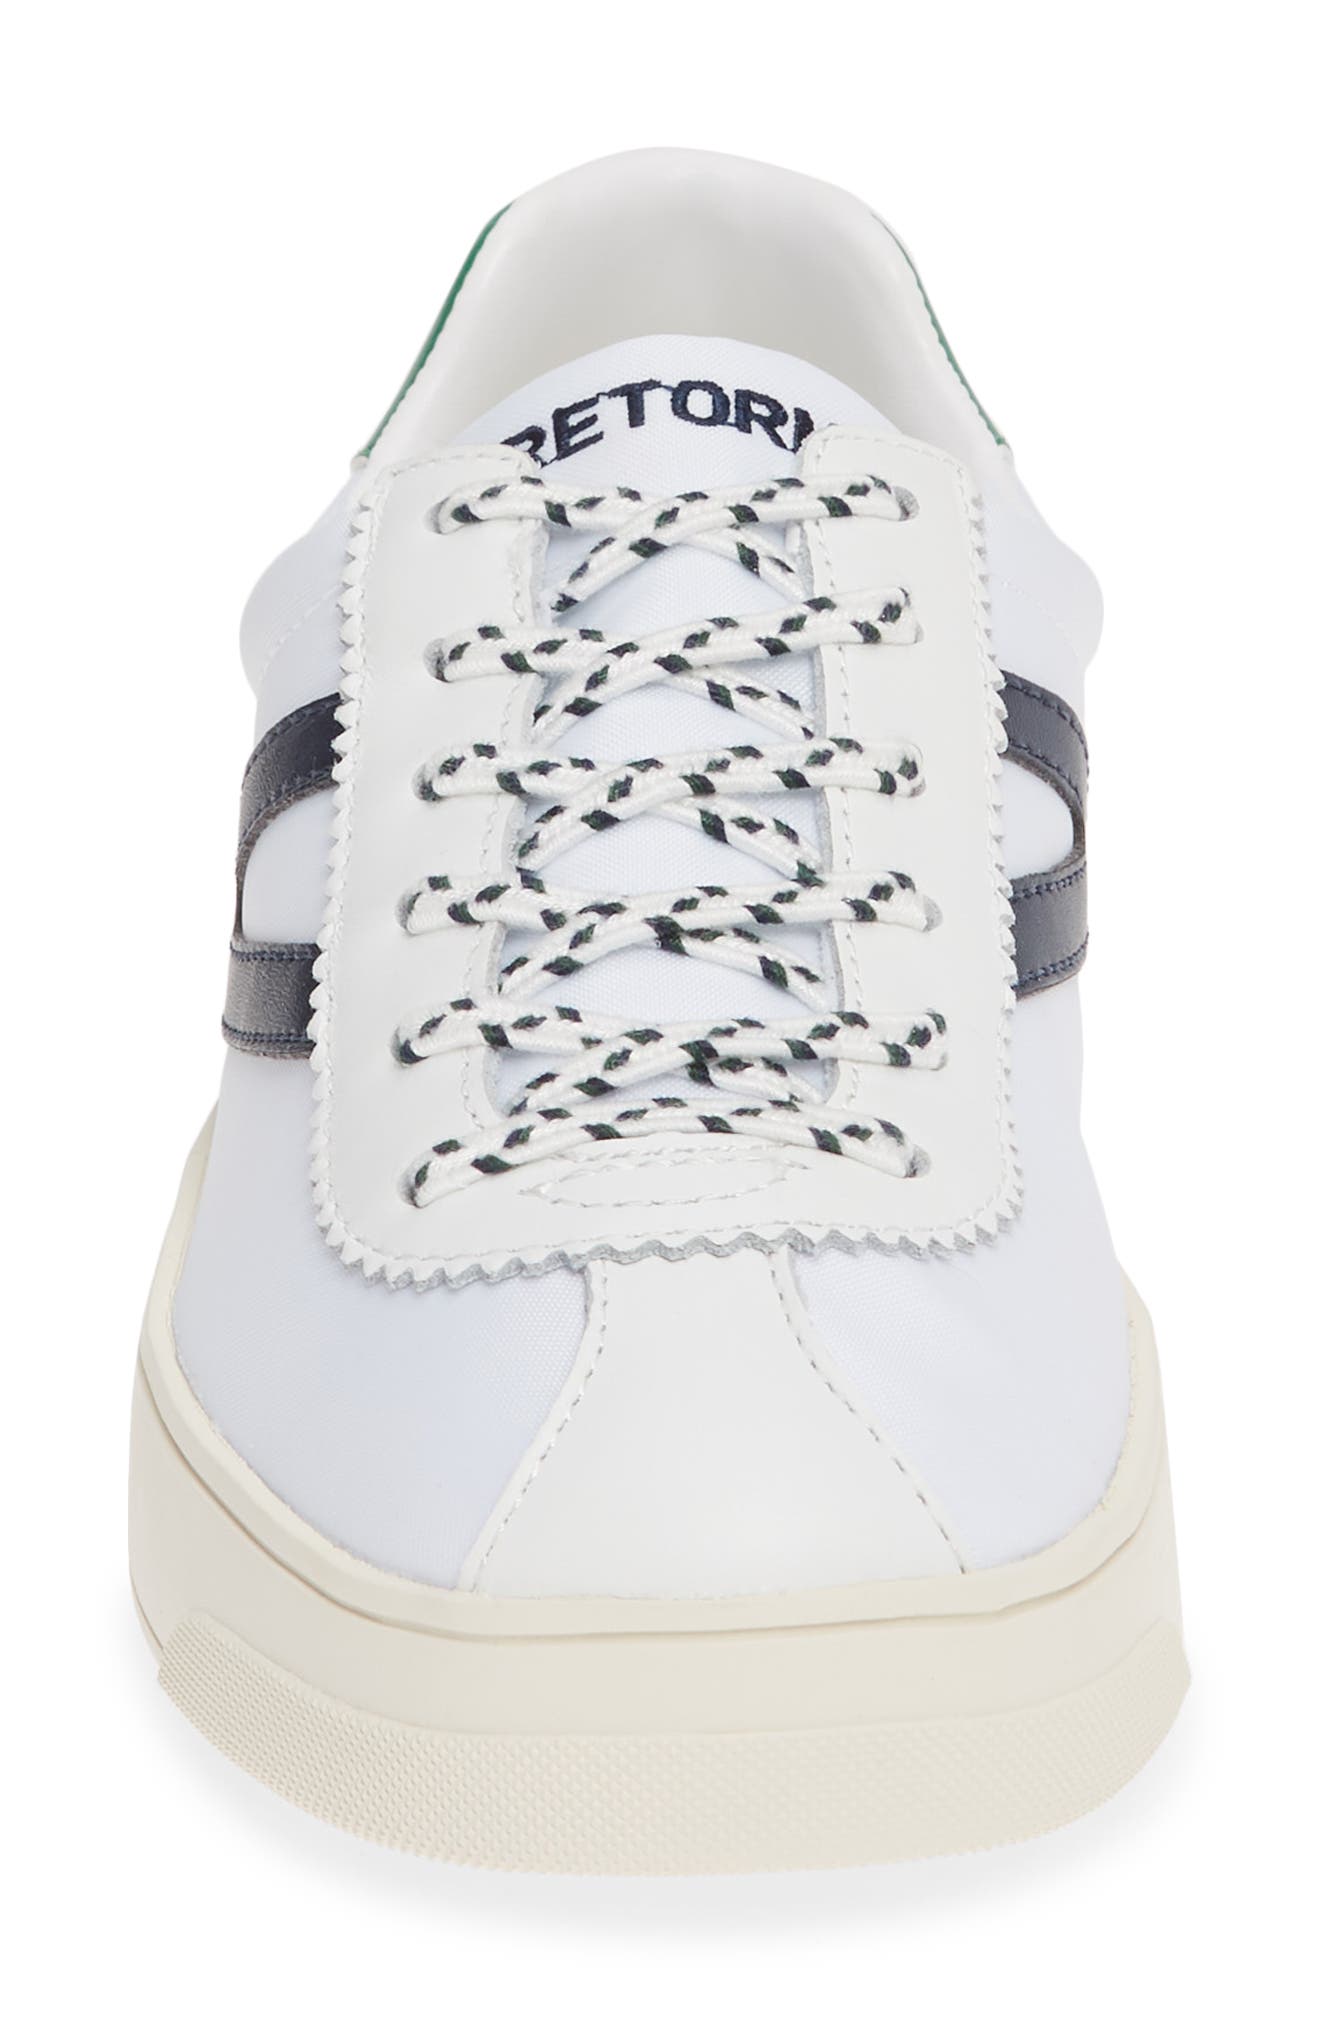 Tretorn | Hayden Low Top Sneaker 